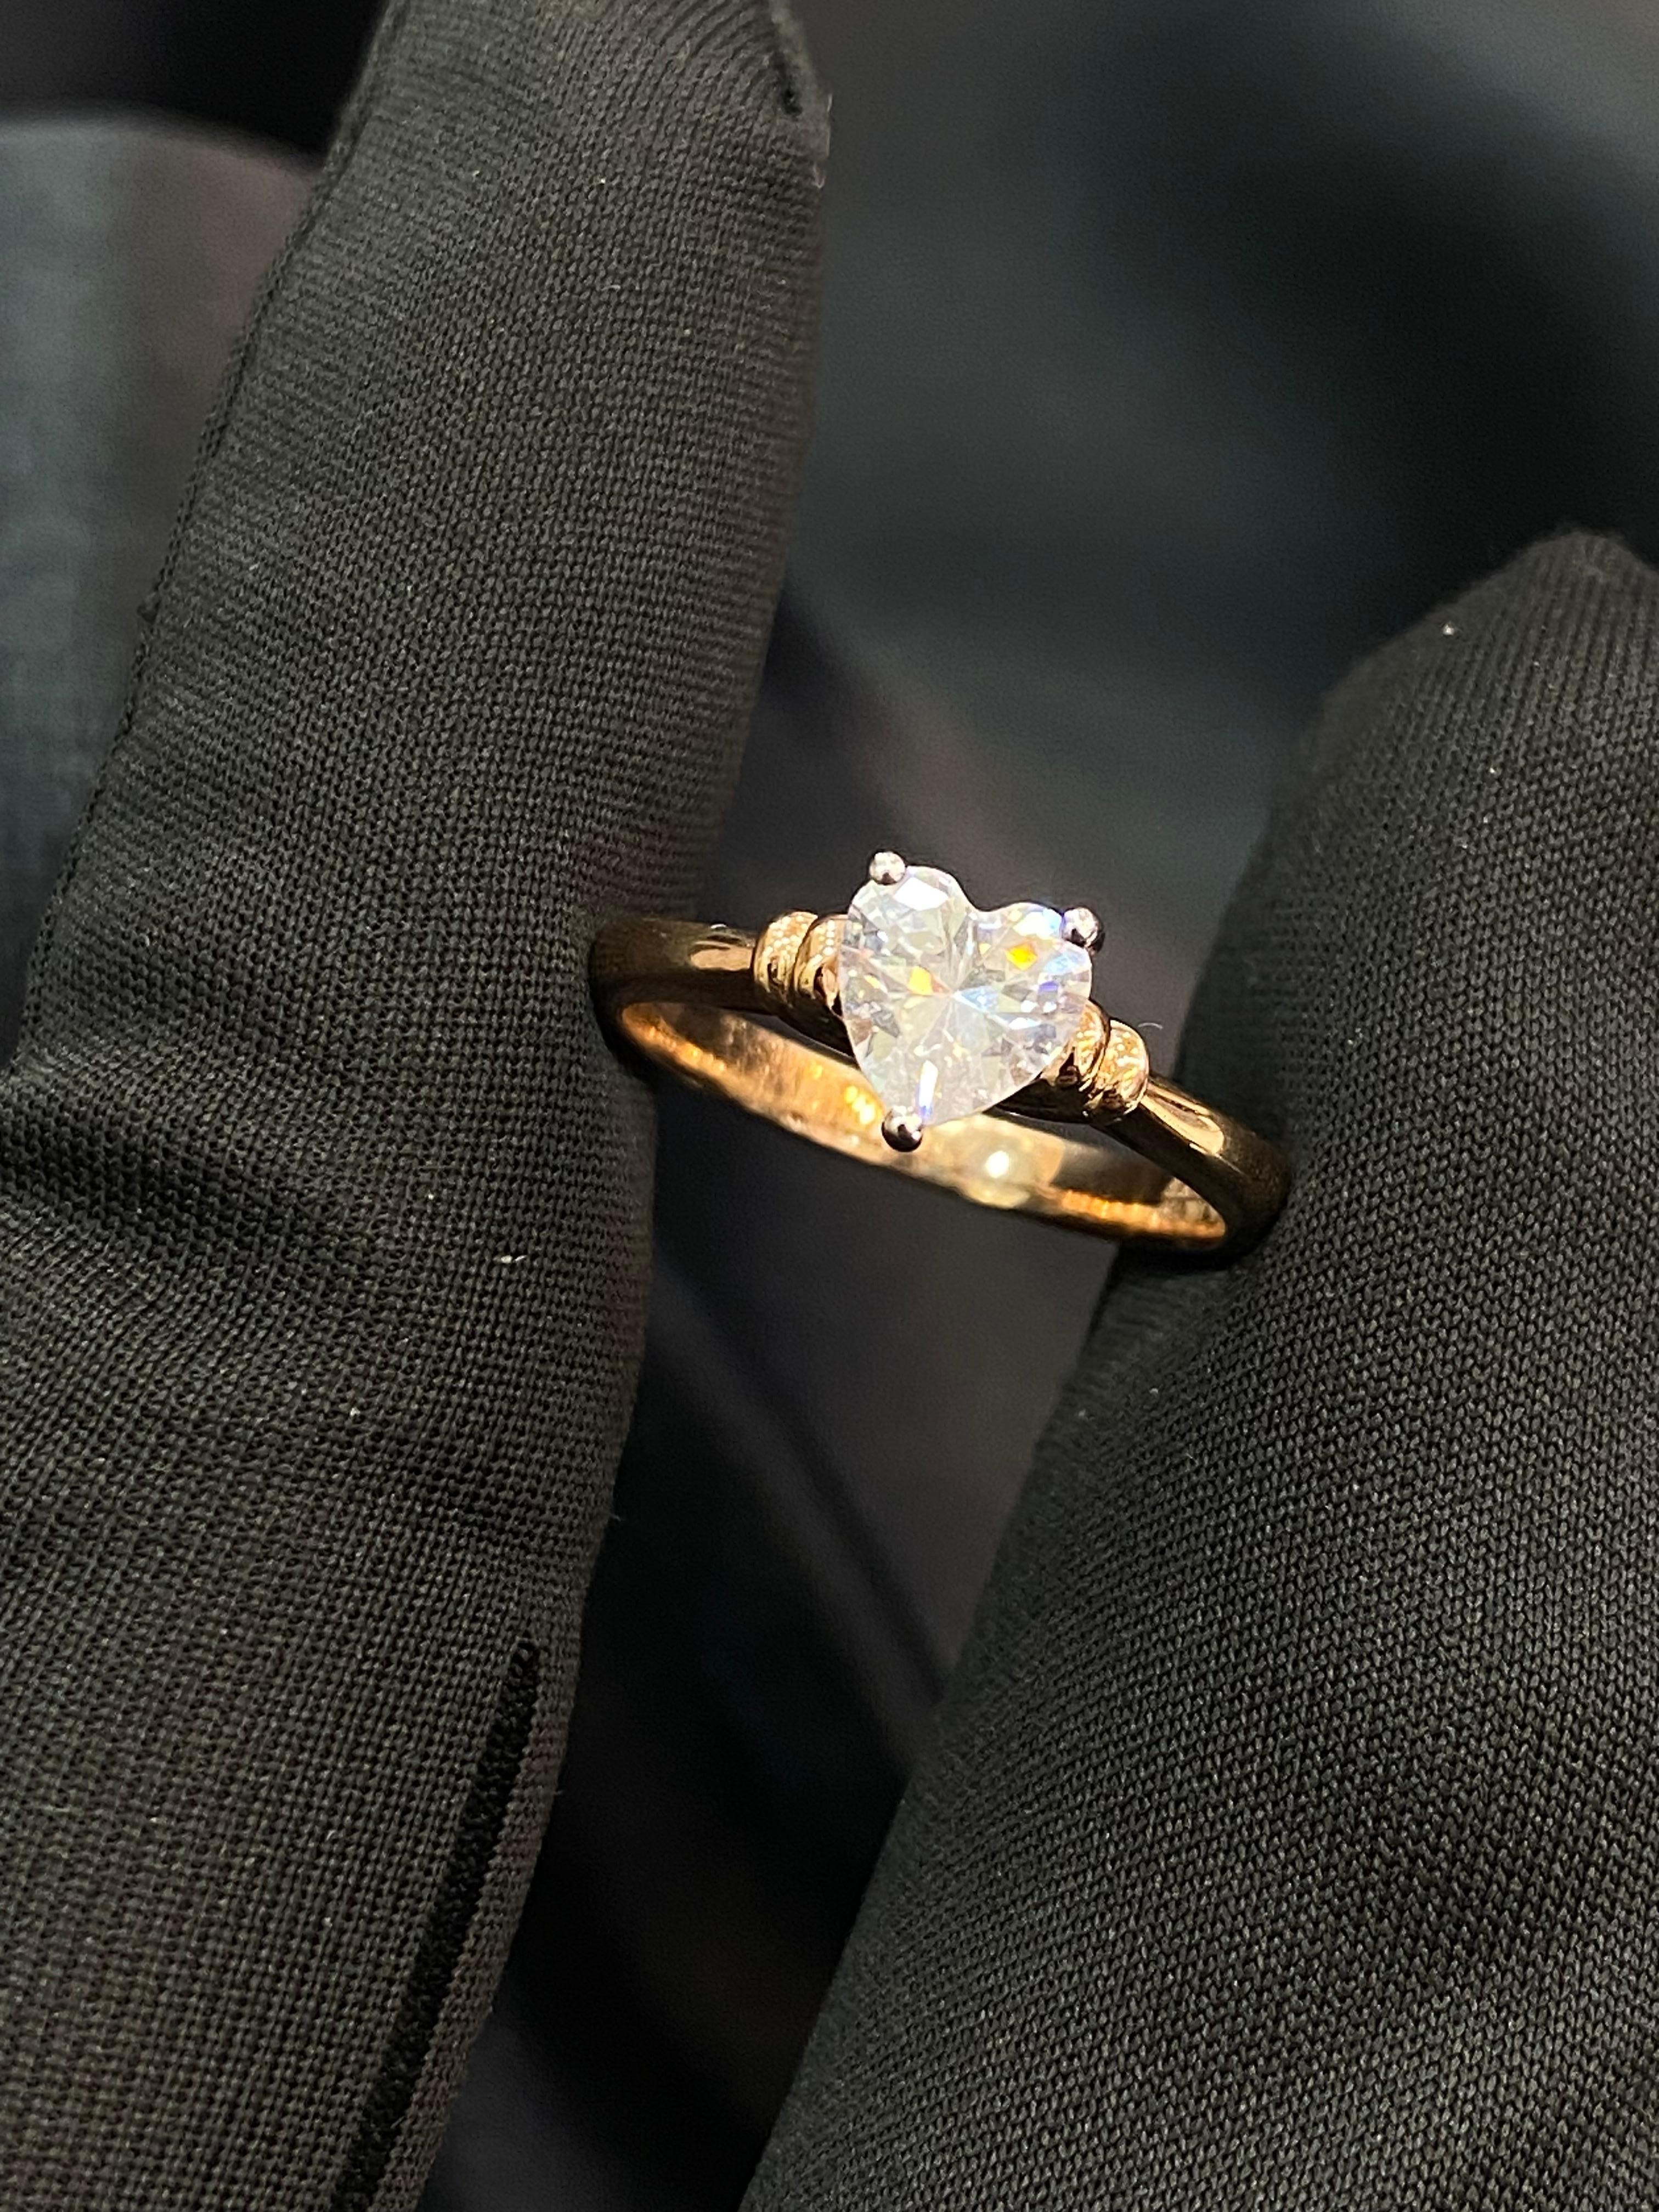 Gönnen Sie sich Luxus mit unserem exklusiven herzförmigen Diamantring mit 0,35 Karat, bei dem jedes erlesene Detail mit dem Glanz funkelnder Diamanten und Gold schimmert. Machen Sie dieses Symbol für Eleganz und Raffinesse noch heute zu Ihrem